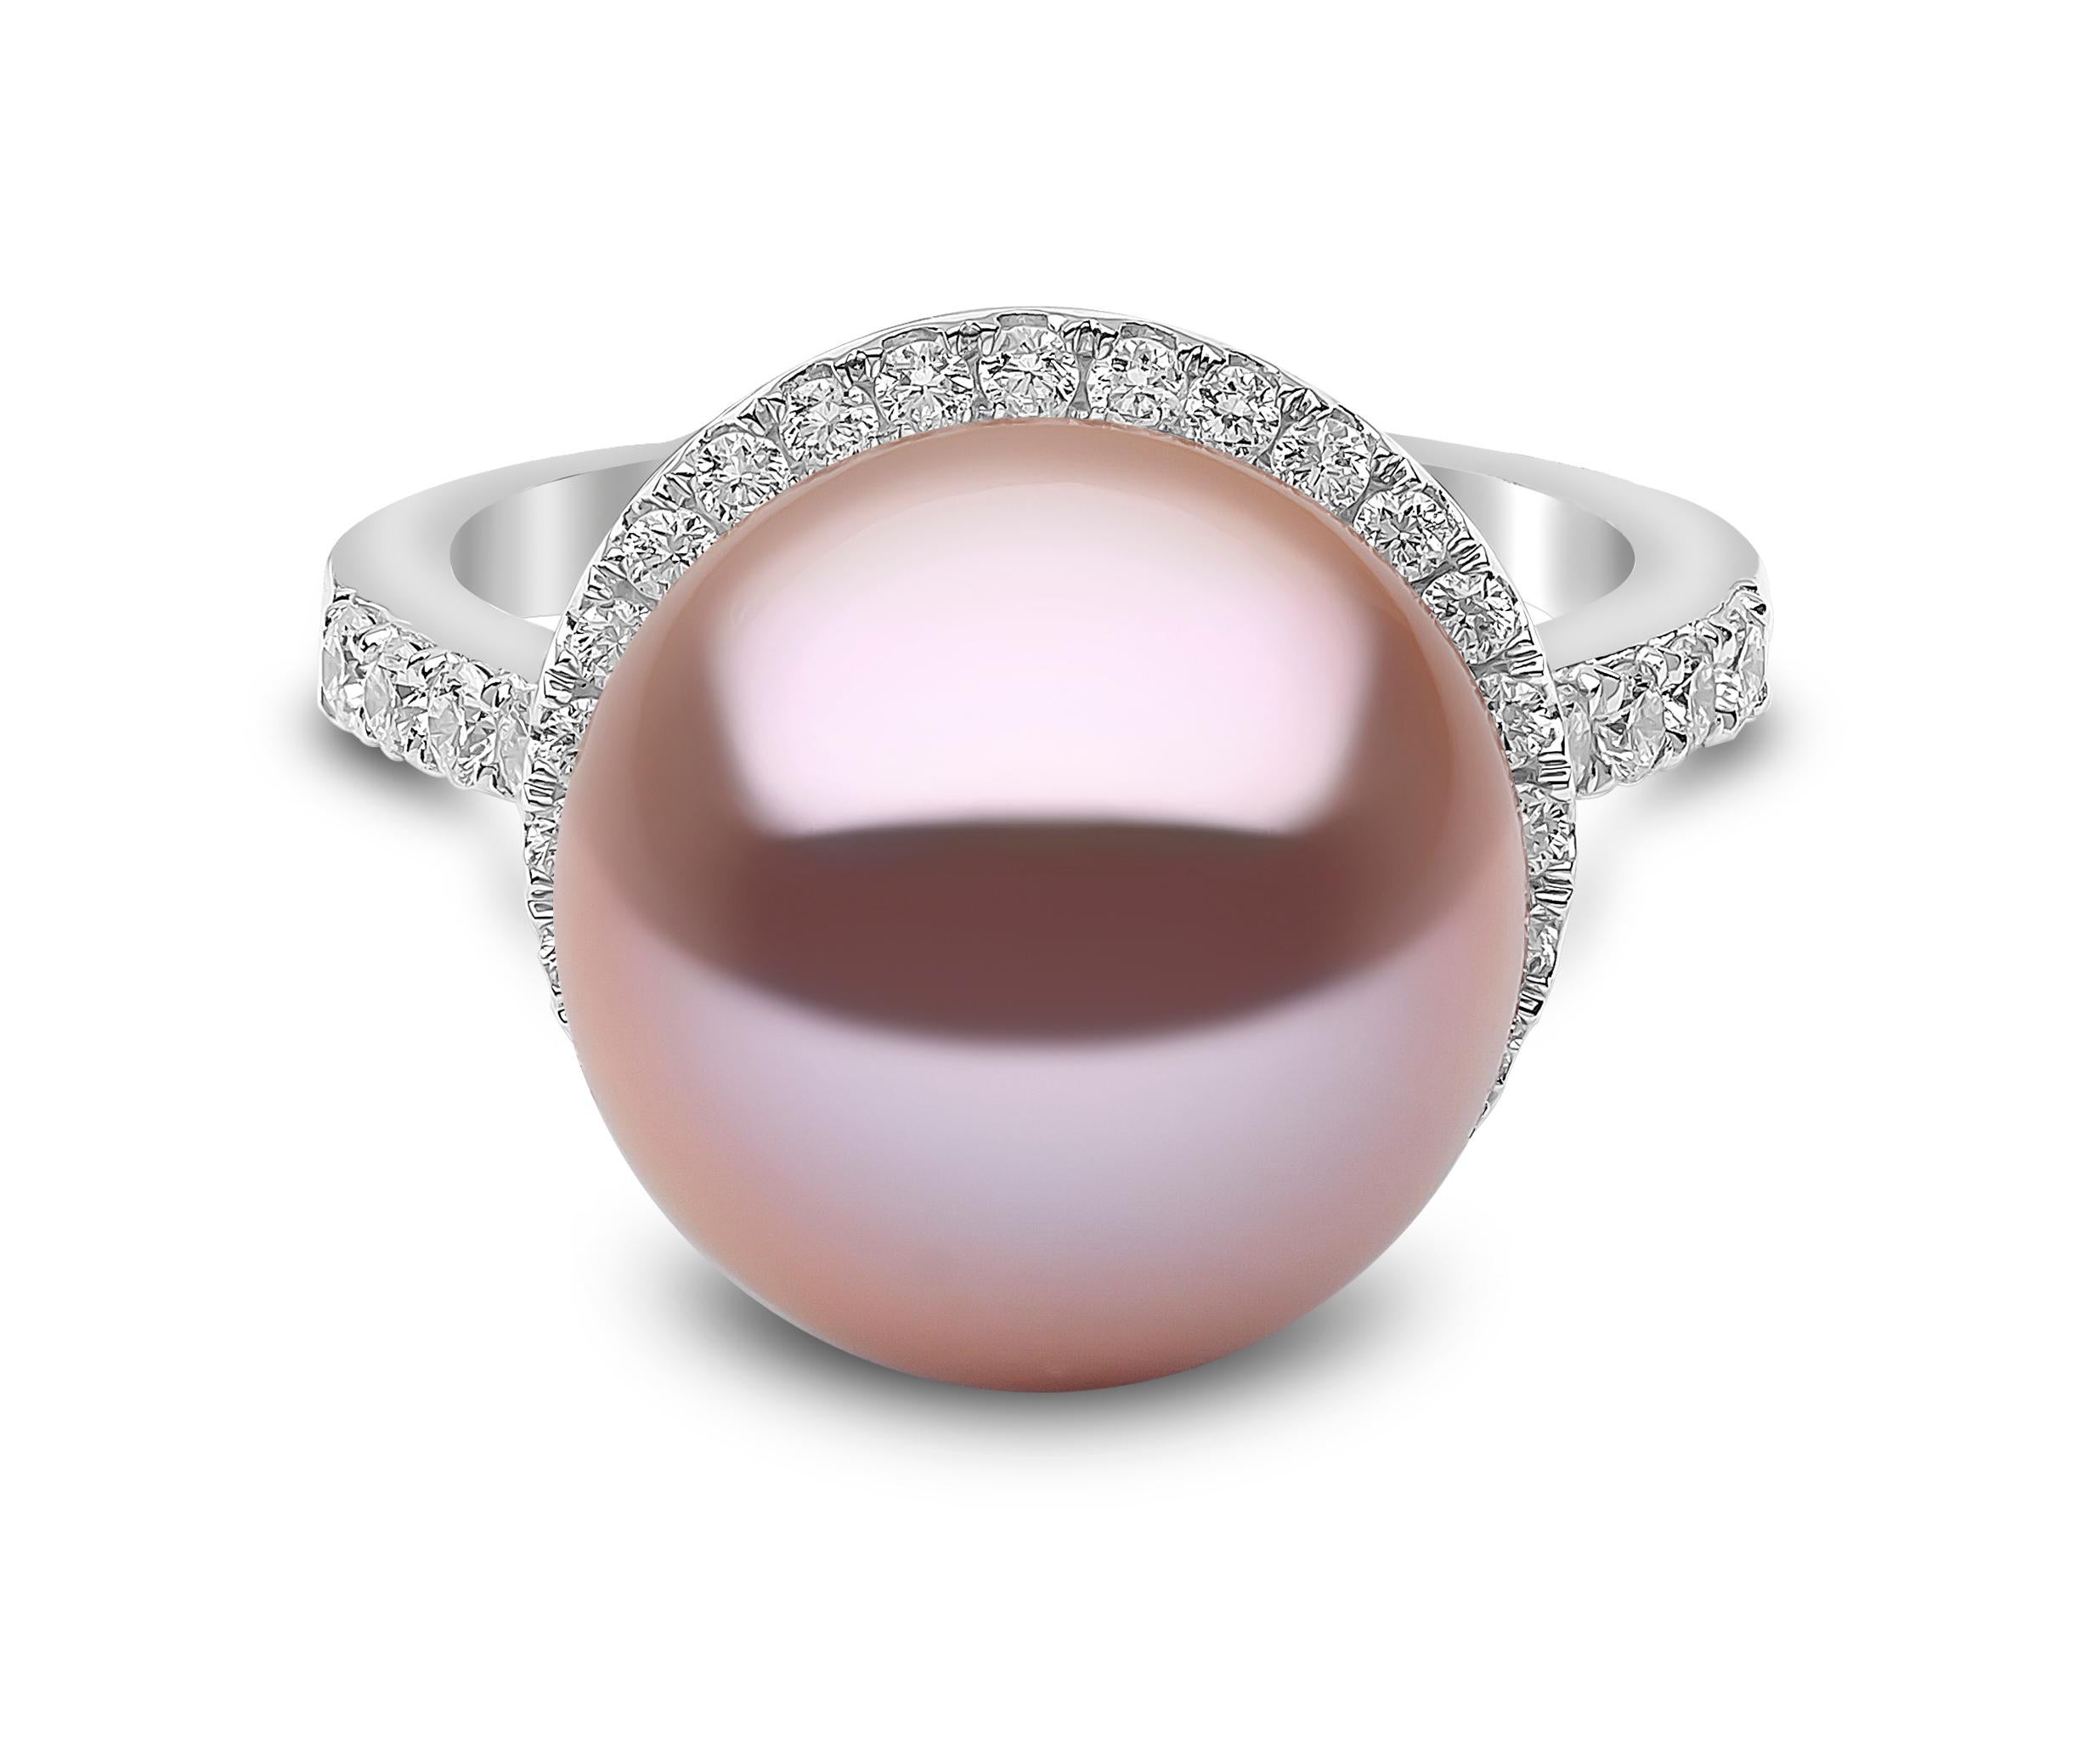 Dieser elegante Ring von Yoko London zeigt in der Mitte eine glänzende rosa Süßwasserperle, die von einem zarten Diamantring umgeben ist. Dieser Ring ist in 18 Karat Weißgold gefasst, um die spektakulären Farbtöne der Perle und das Funkeln der